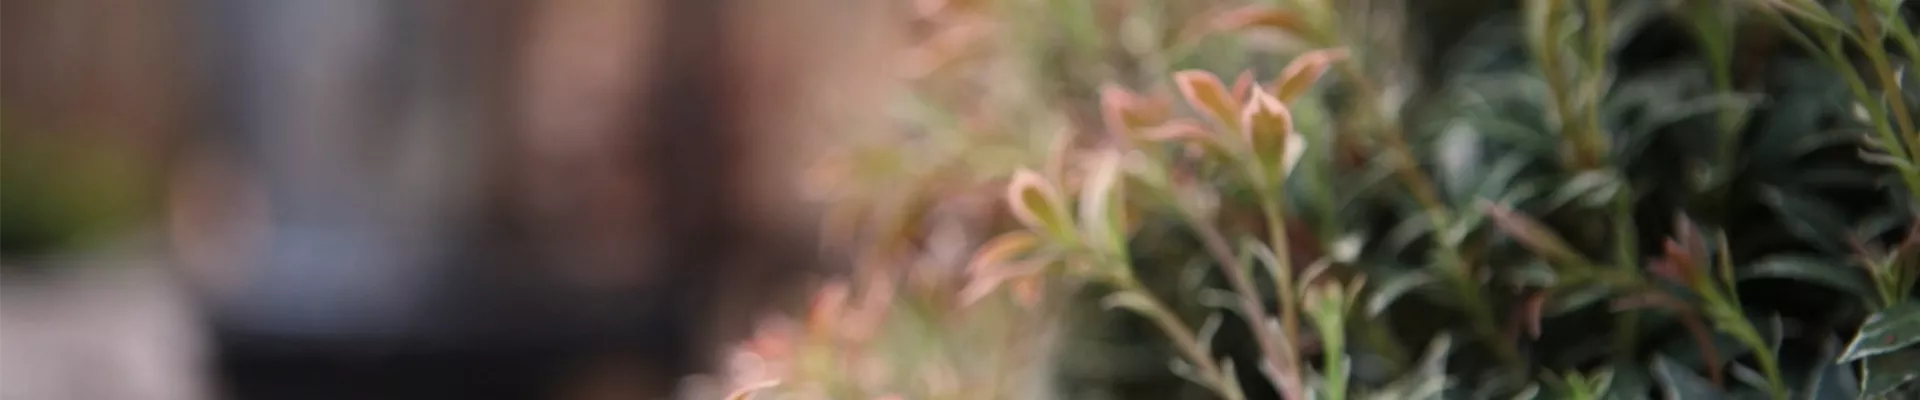 Japanisches Schattenglöckchen - Einpflanzen in den Garten (Thumbnail)